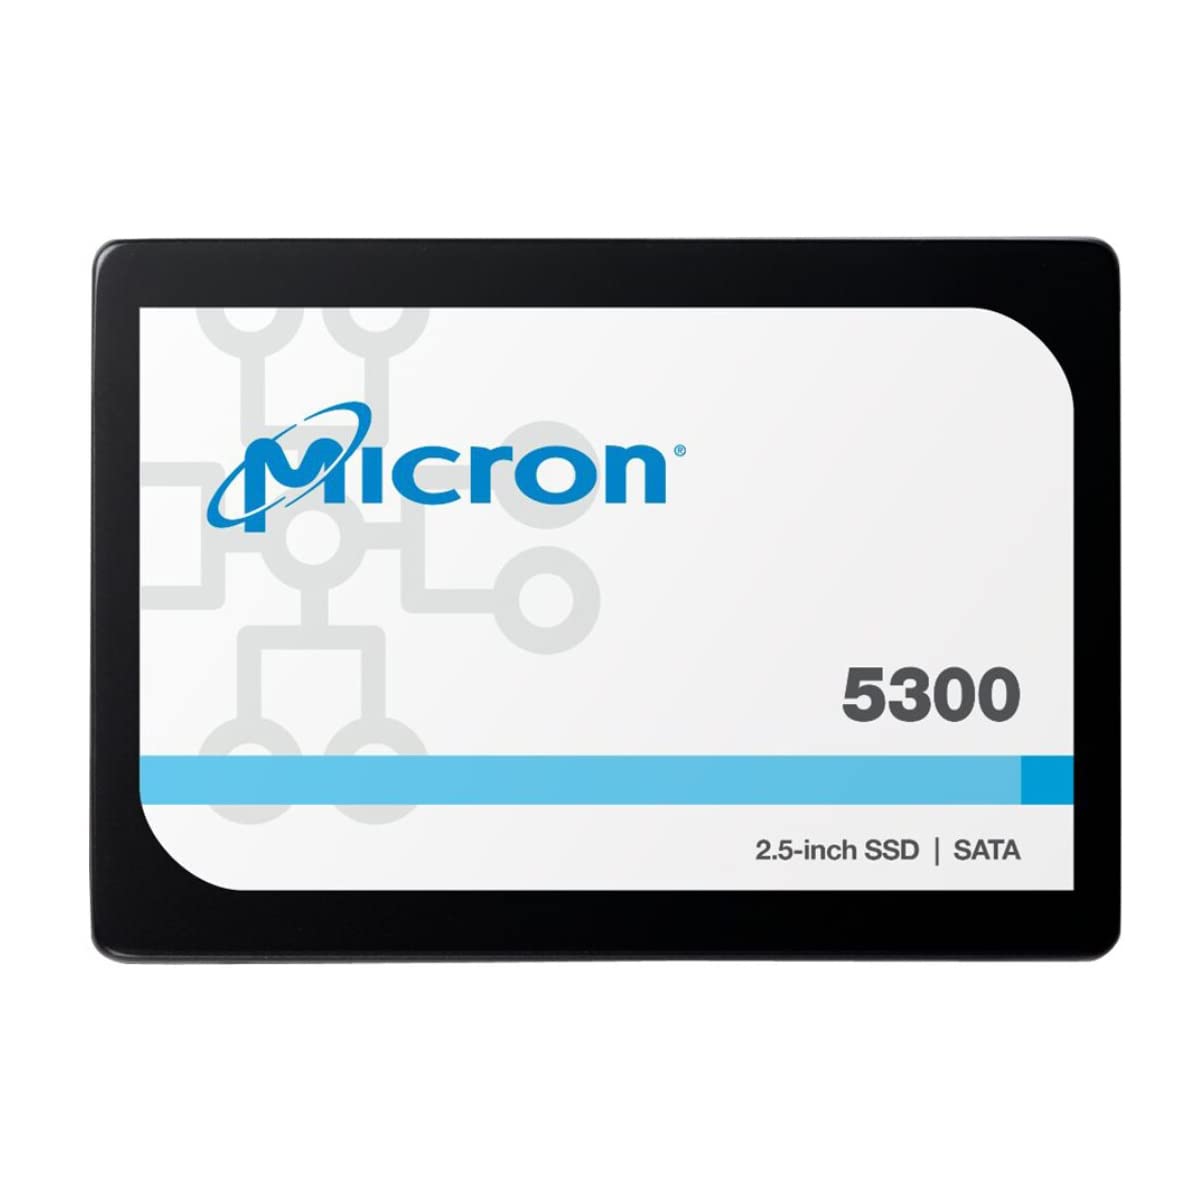 Micron 5300 PRO 1.92TB ソリッドステートドライブ - 2.5インチ 内蔵型 - SATA - 読み込み集中 - サーバ